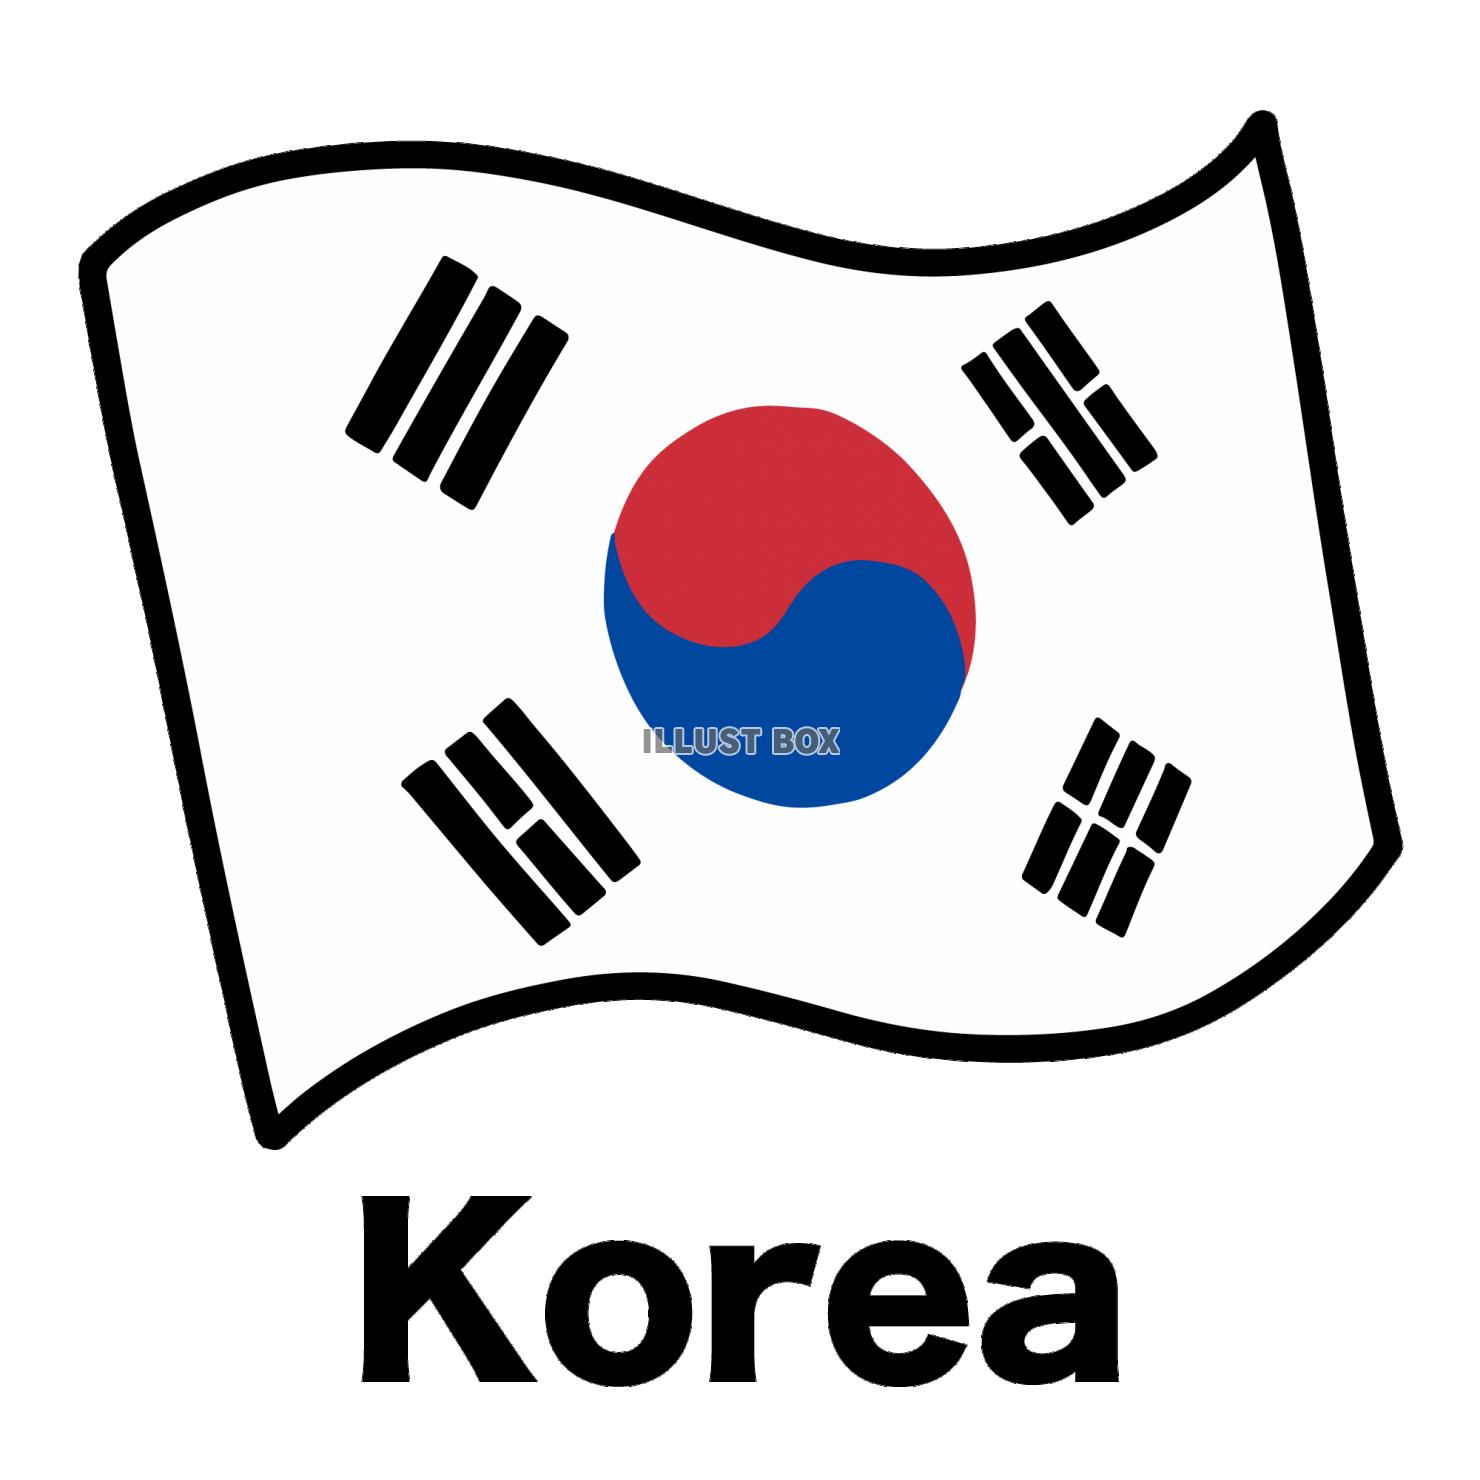 韓国 イラスト無料